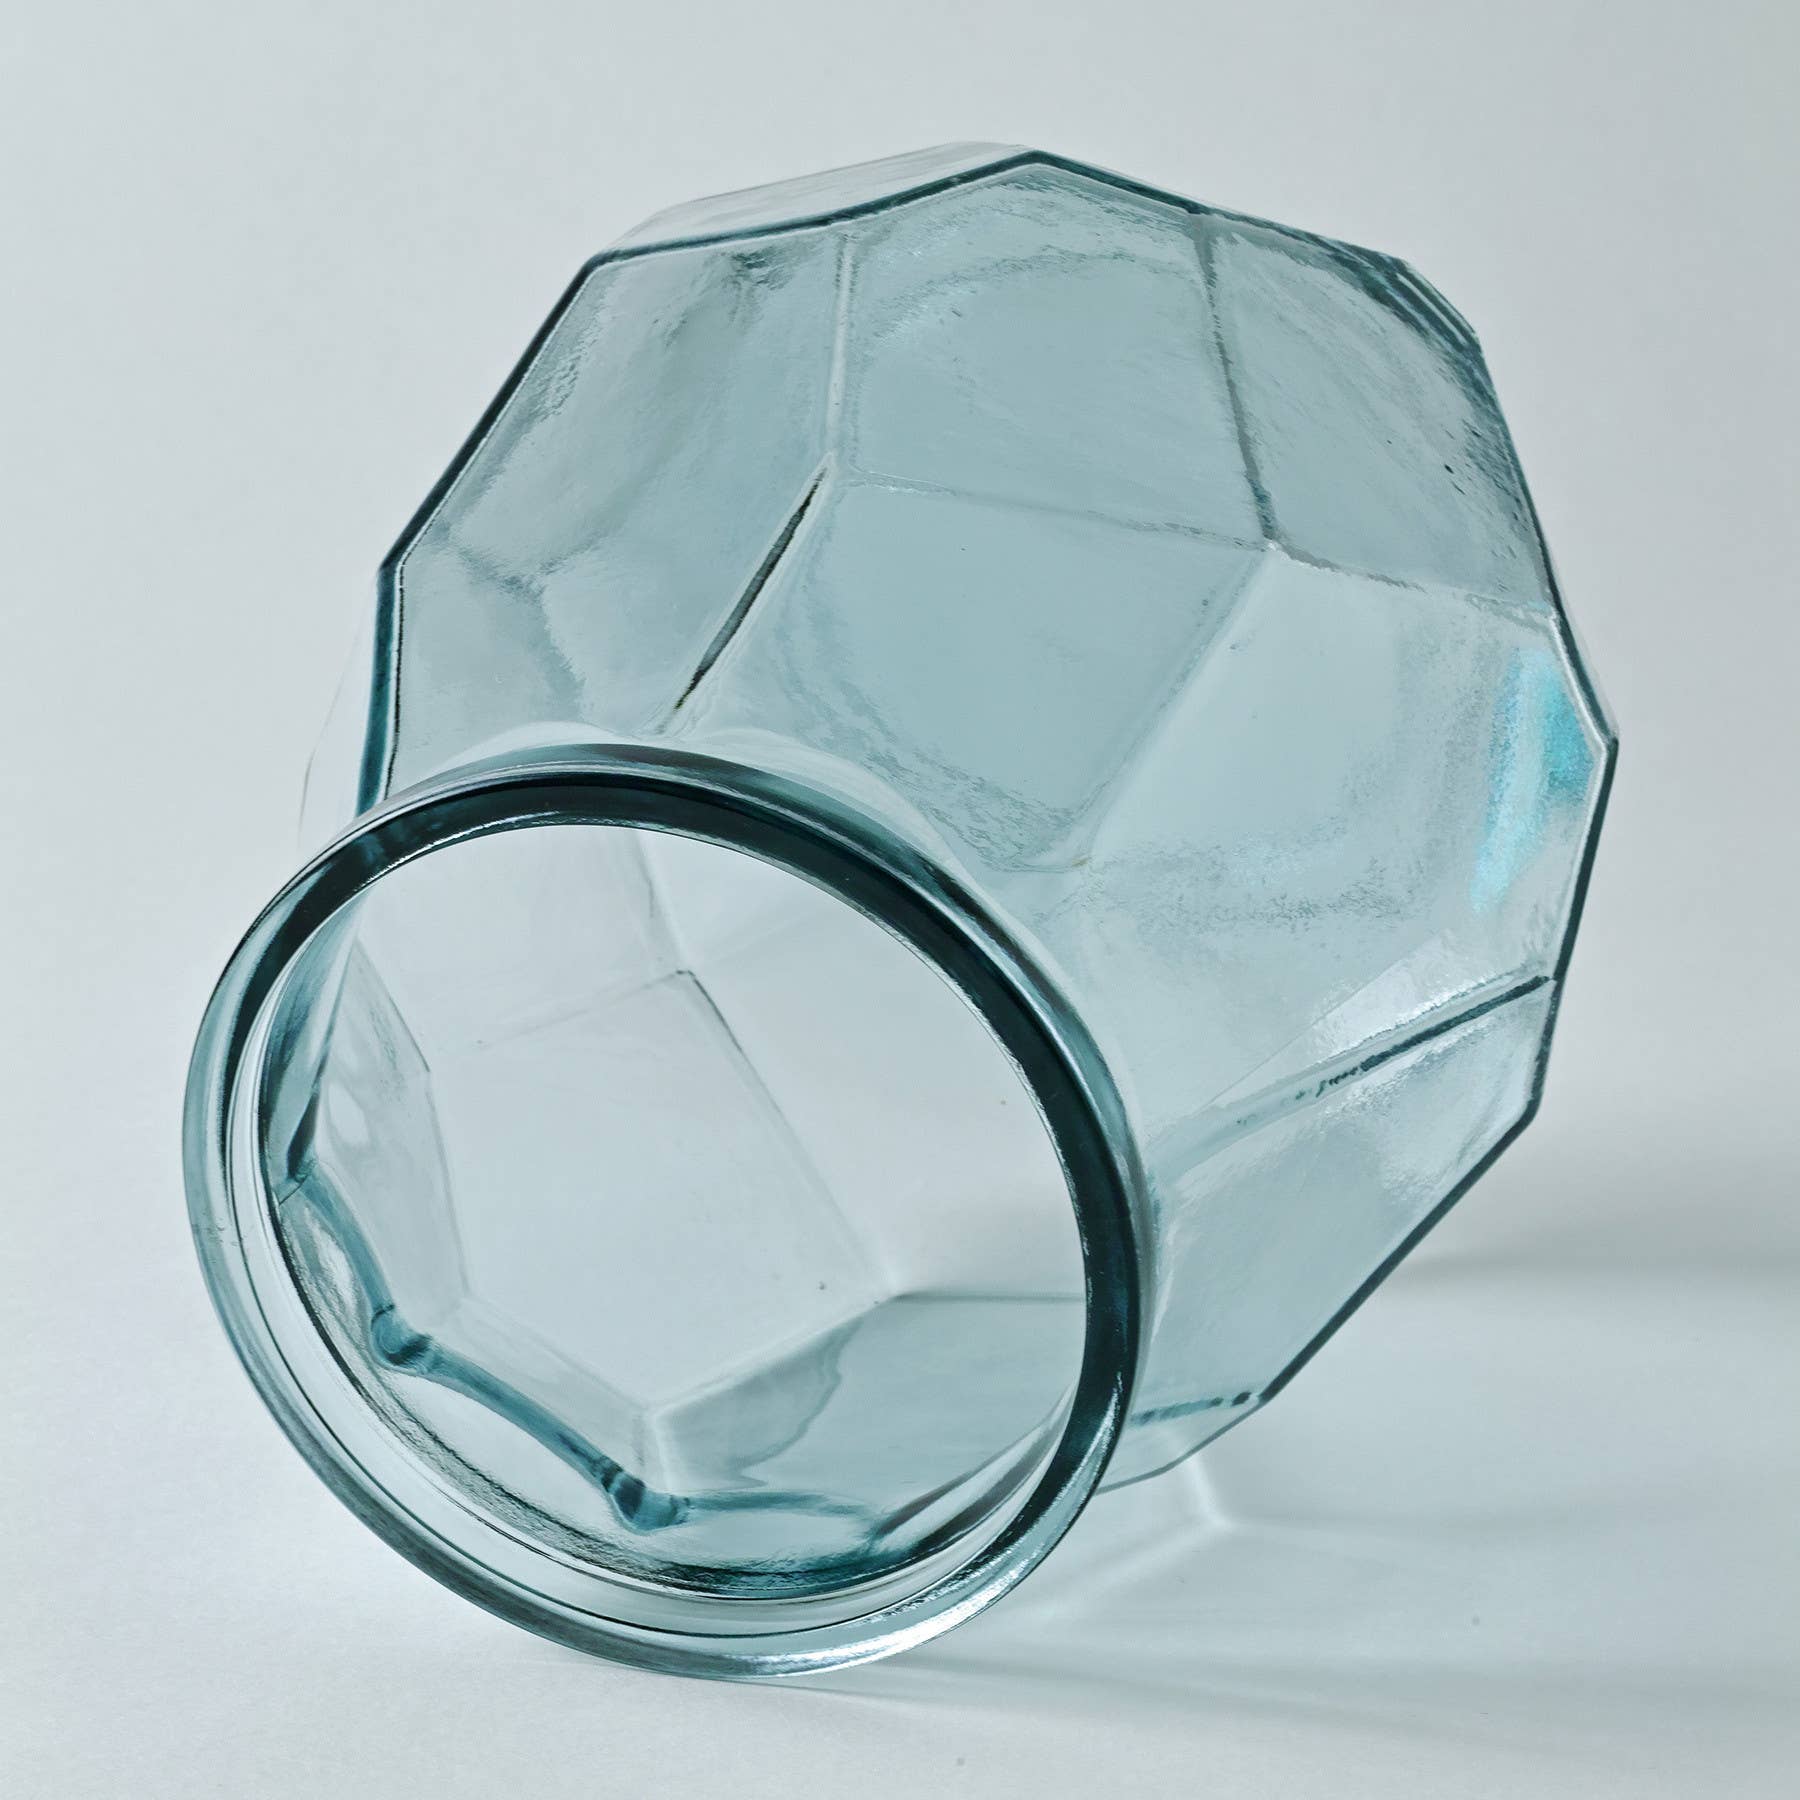 VALENCIA Origami Vase Collection VEINTI SEIS